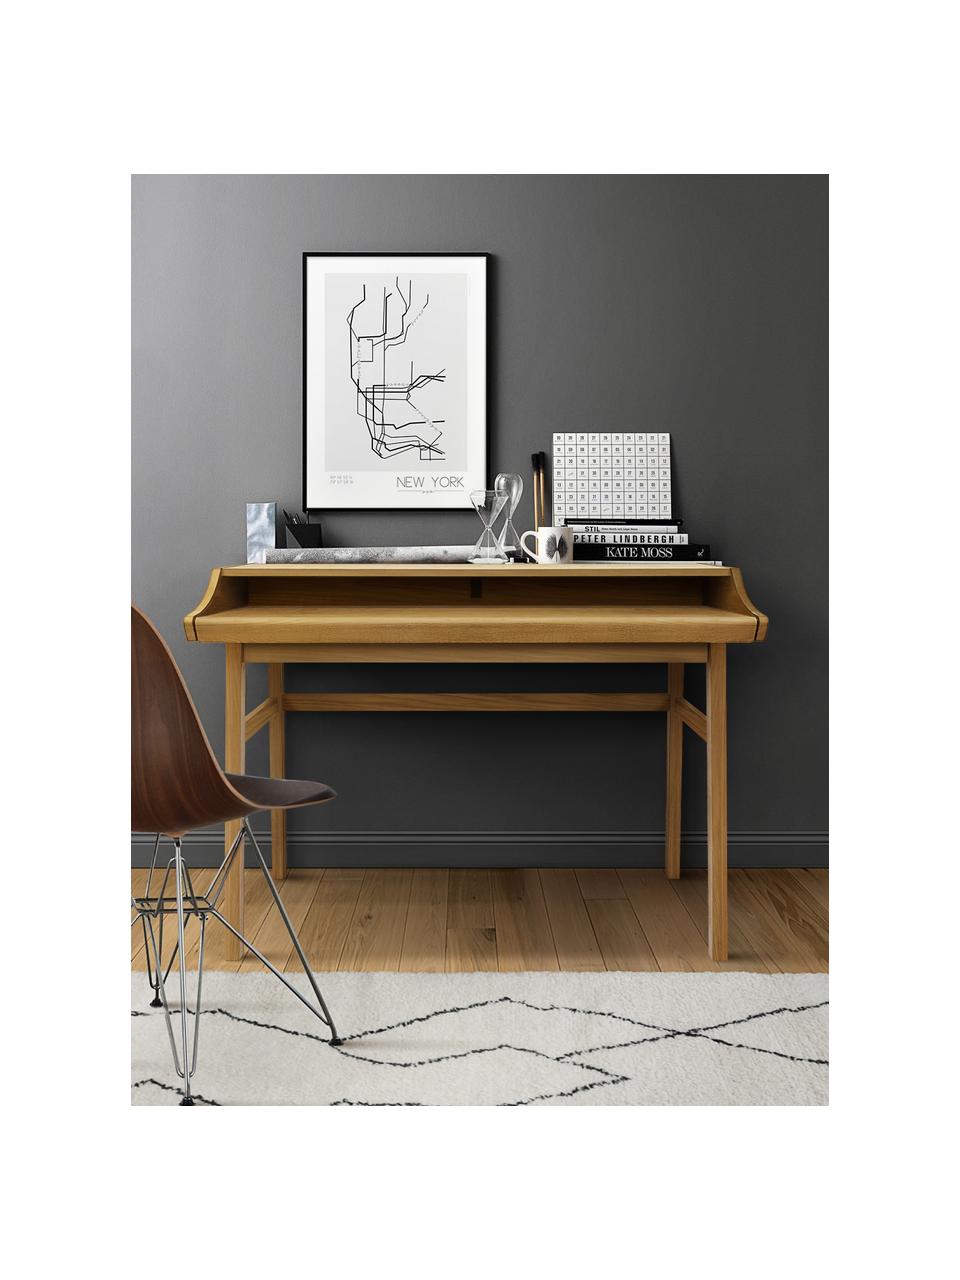 Rozšíriteľný pracovný stôl Carteret, 115 x 44 - 68 cm, Svetlohnedá, Š 115 x V 84 cm